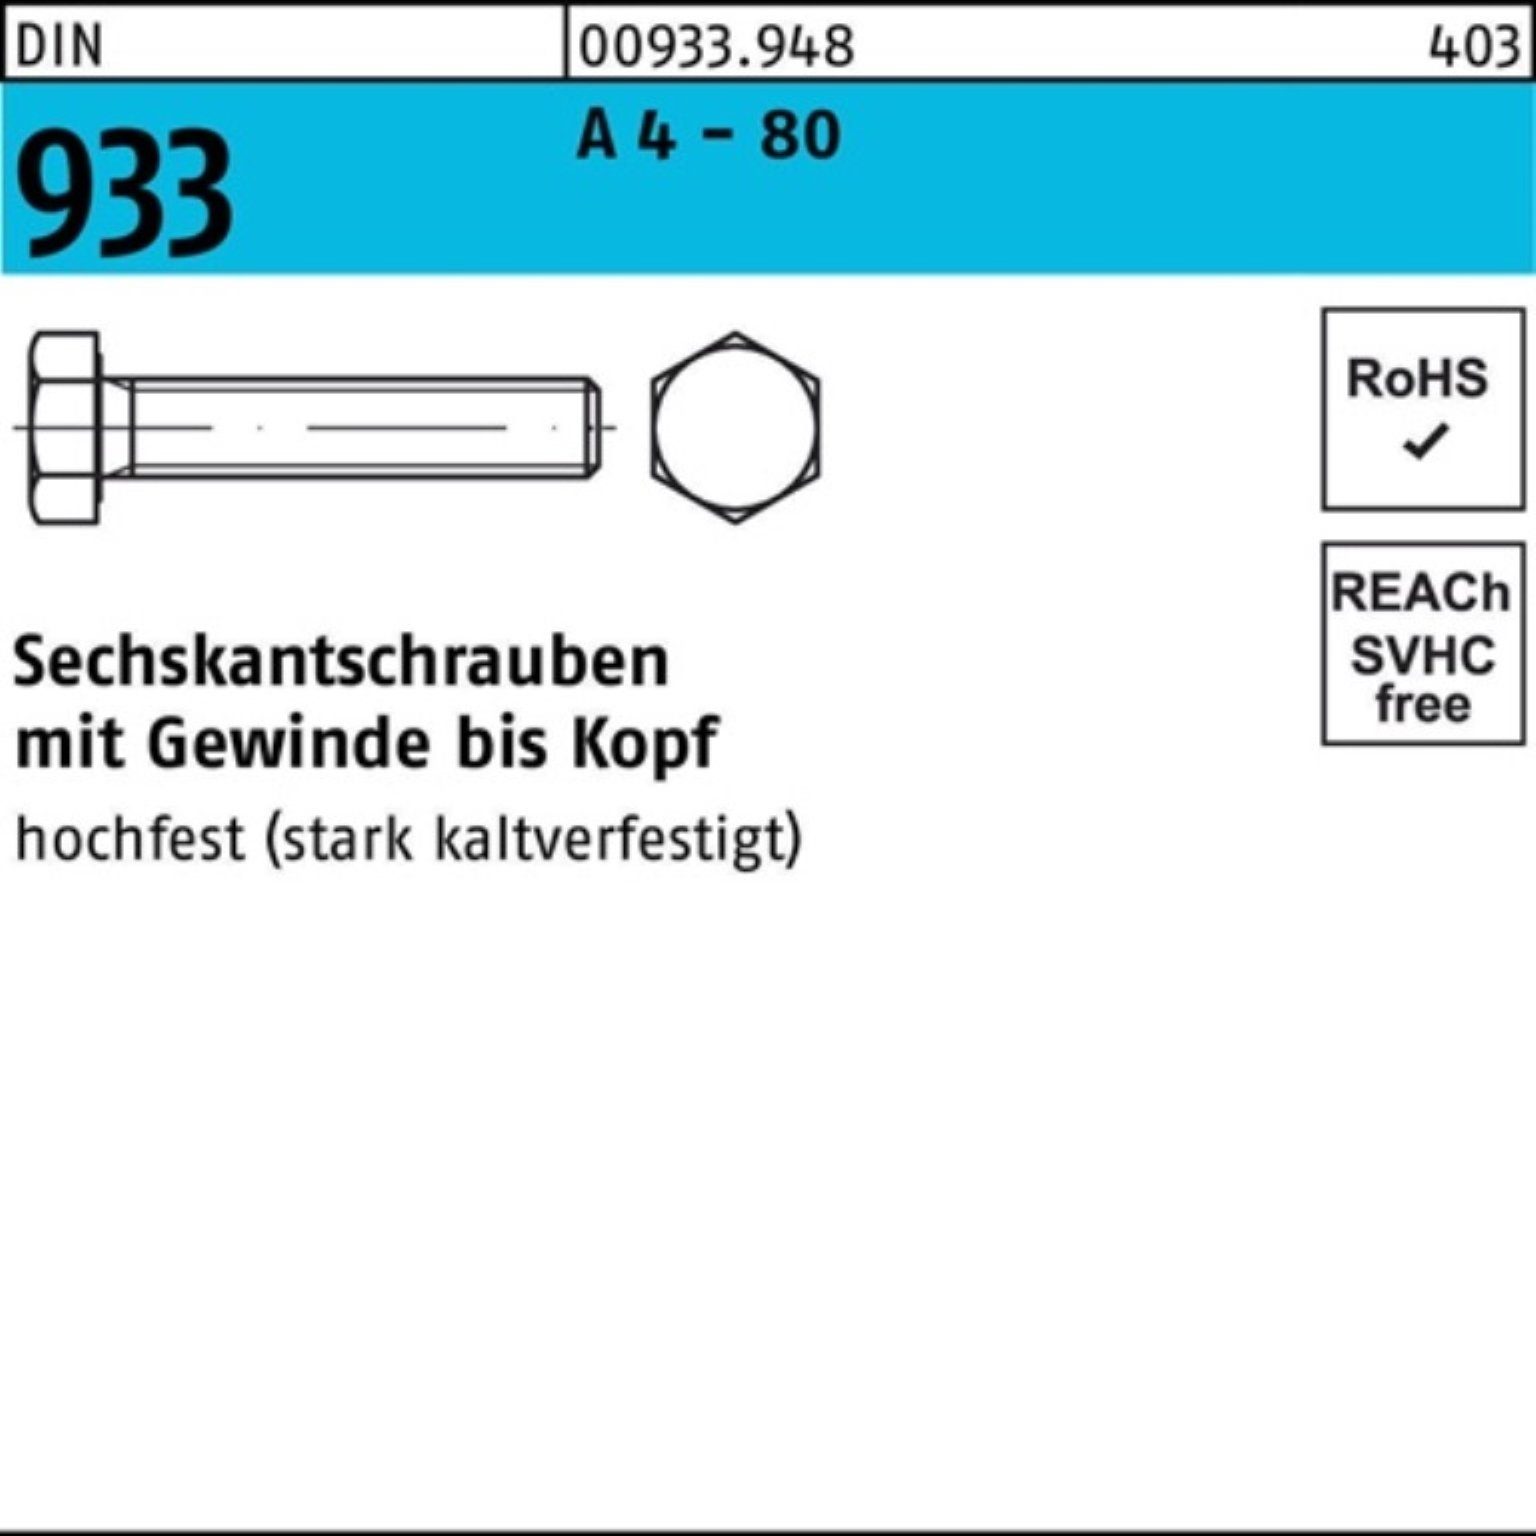 Reyher Sechskantschraube 100er Pack Sechskantschraube DIN 933 VG M16x 70 A 4 - 80 25 Stück DIN